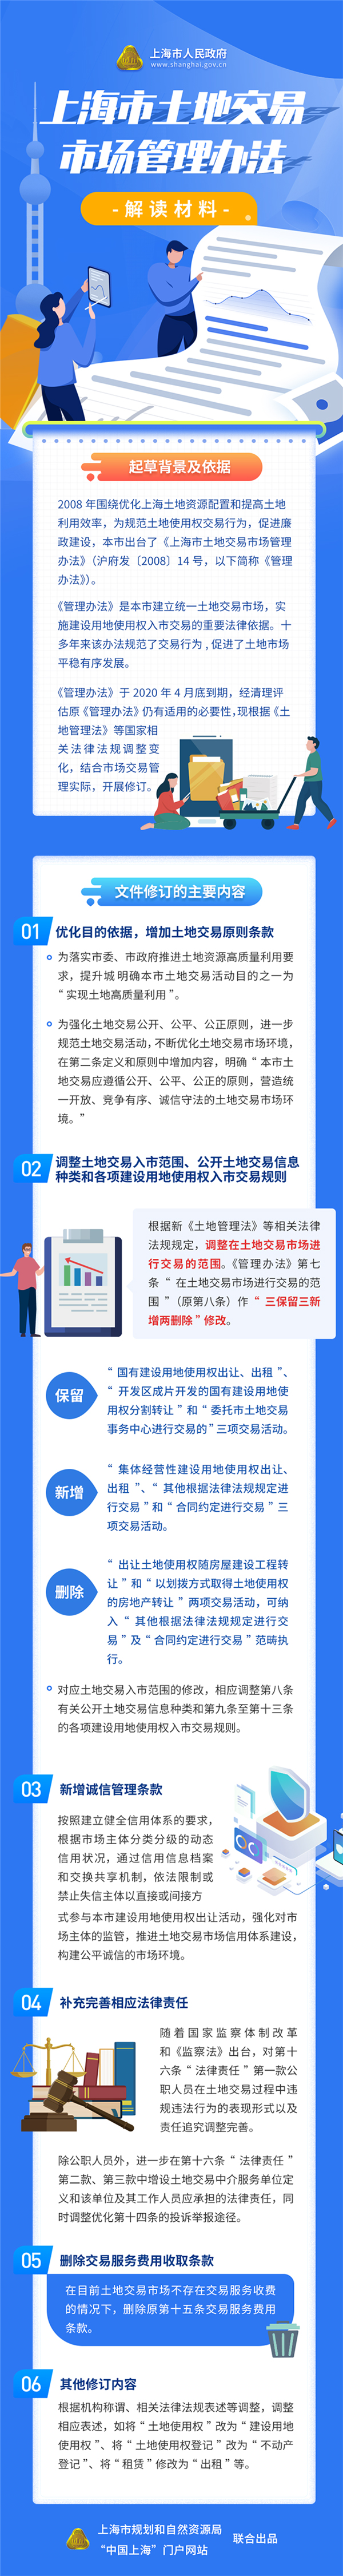 上海新版土地交易市场管理办法：集体经营性建设用地纳入市场